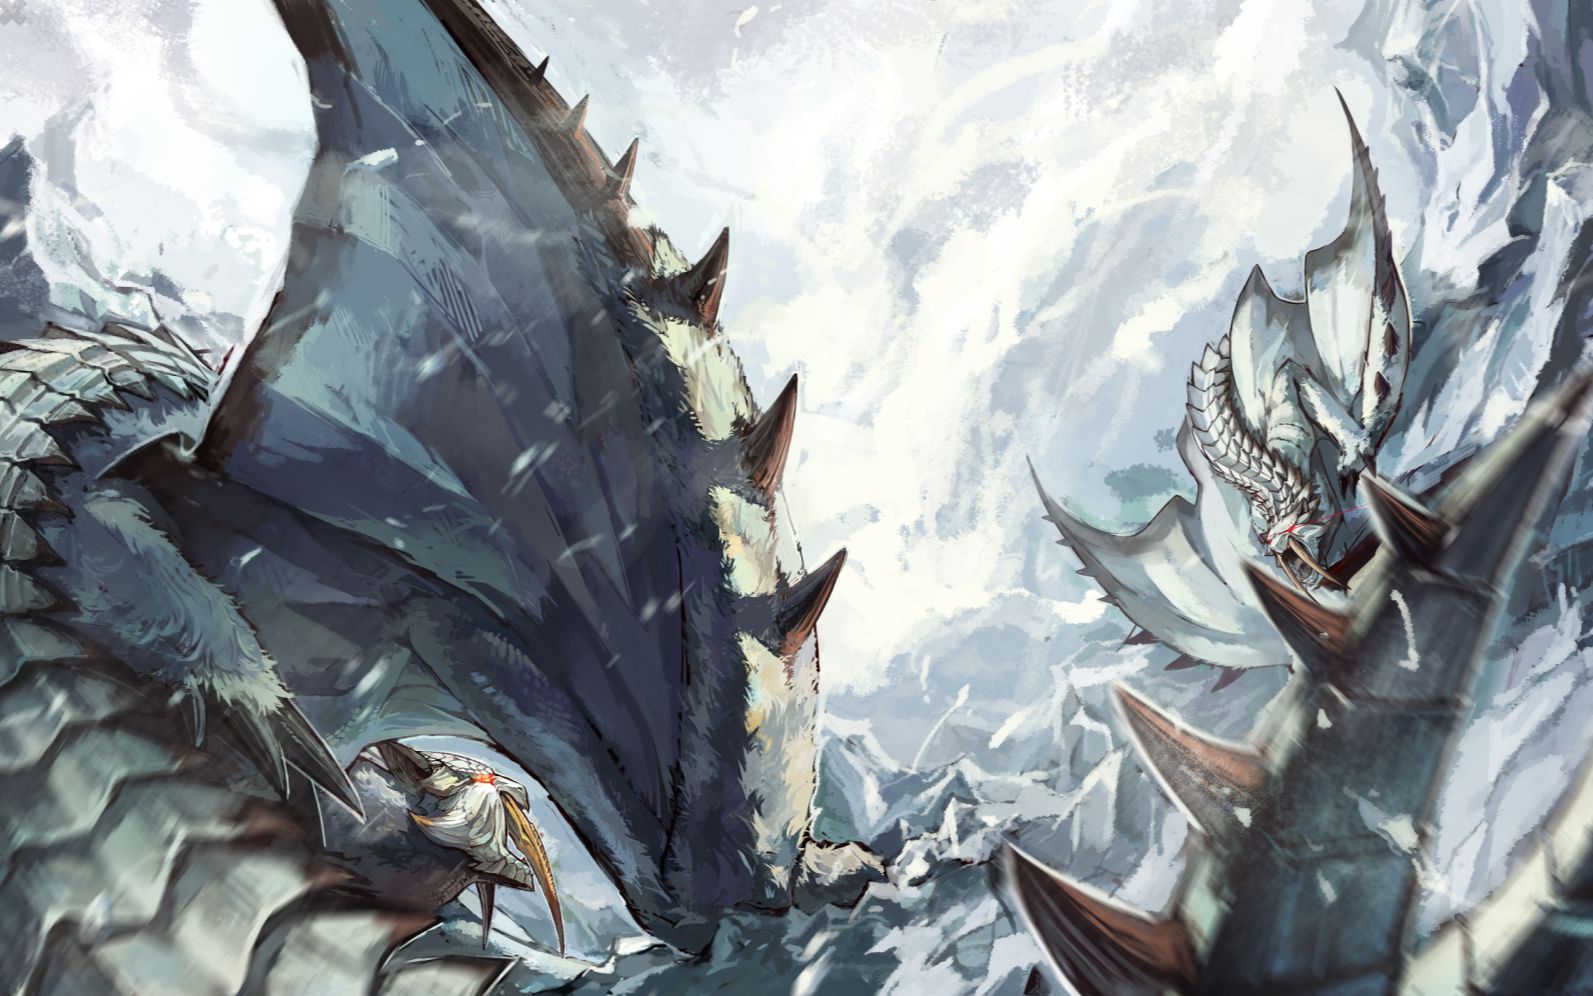 【怪物猎人生态志】雪原的白骑士——冰牙龙(亚种,稀少种)